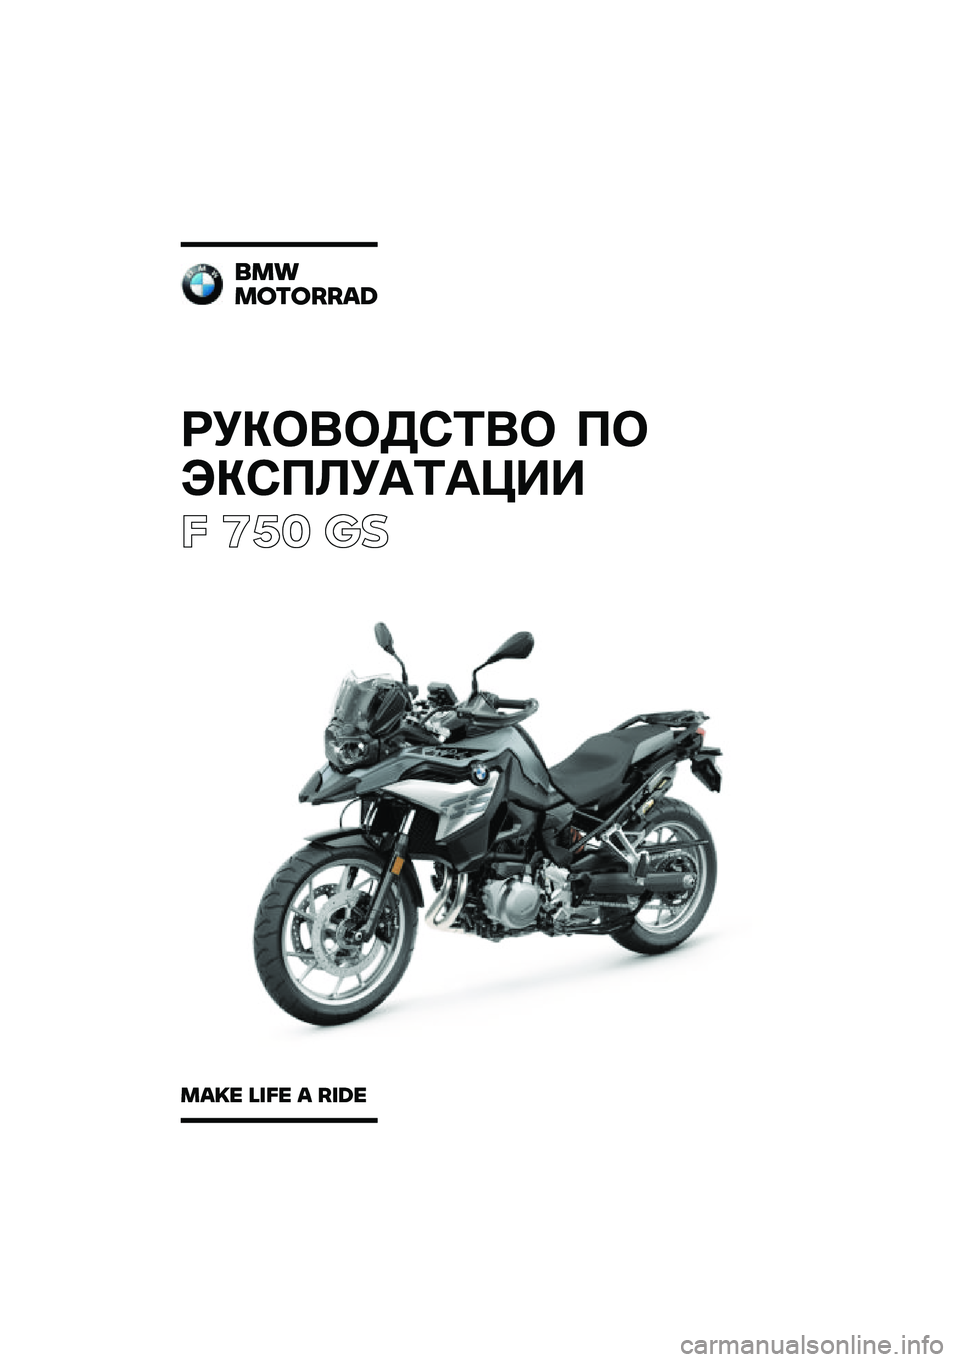 BMW MOTORRAD F 750 GS 2020  Руководство по эксплуатации (in Russian) ��������\b�	�� �
�
���\b�
�\f��
�	�
���
� ��� �\b�	
���
�������\b�	
��\b�
� �\f�
�� �\b ��
�	� 